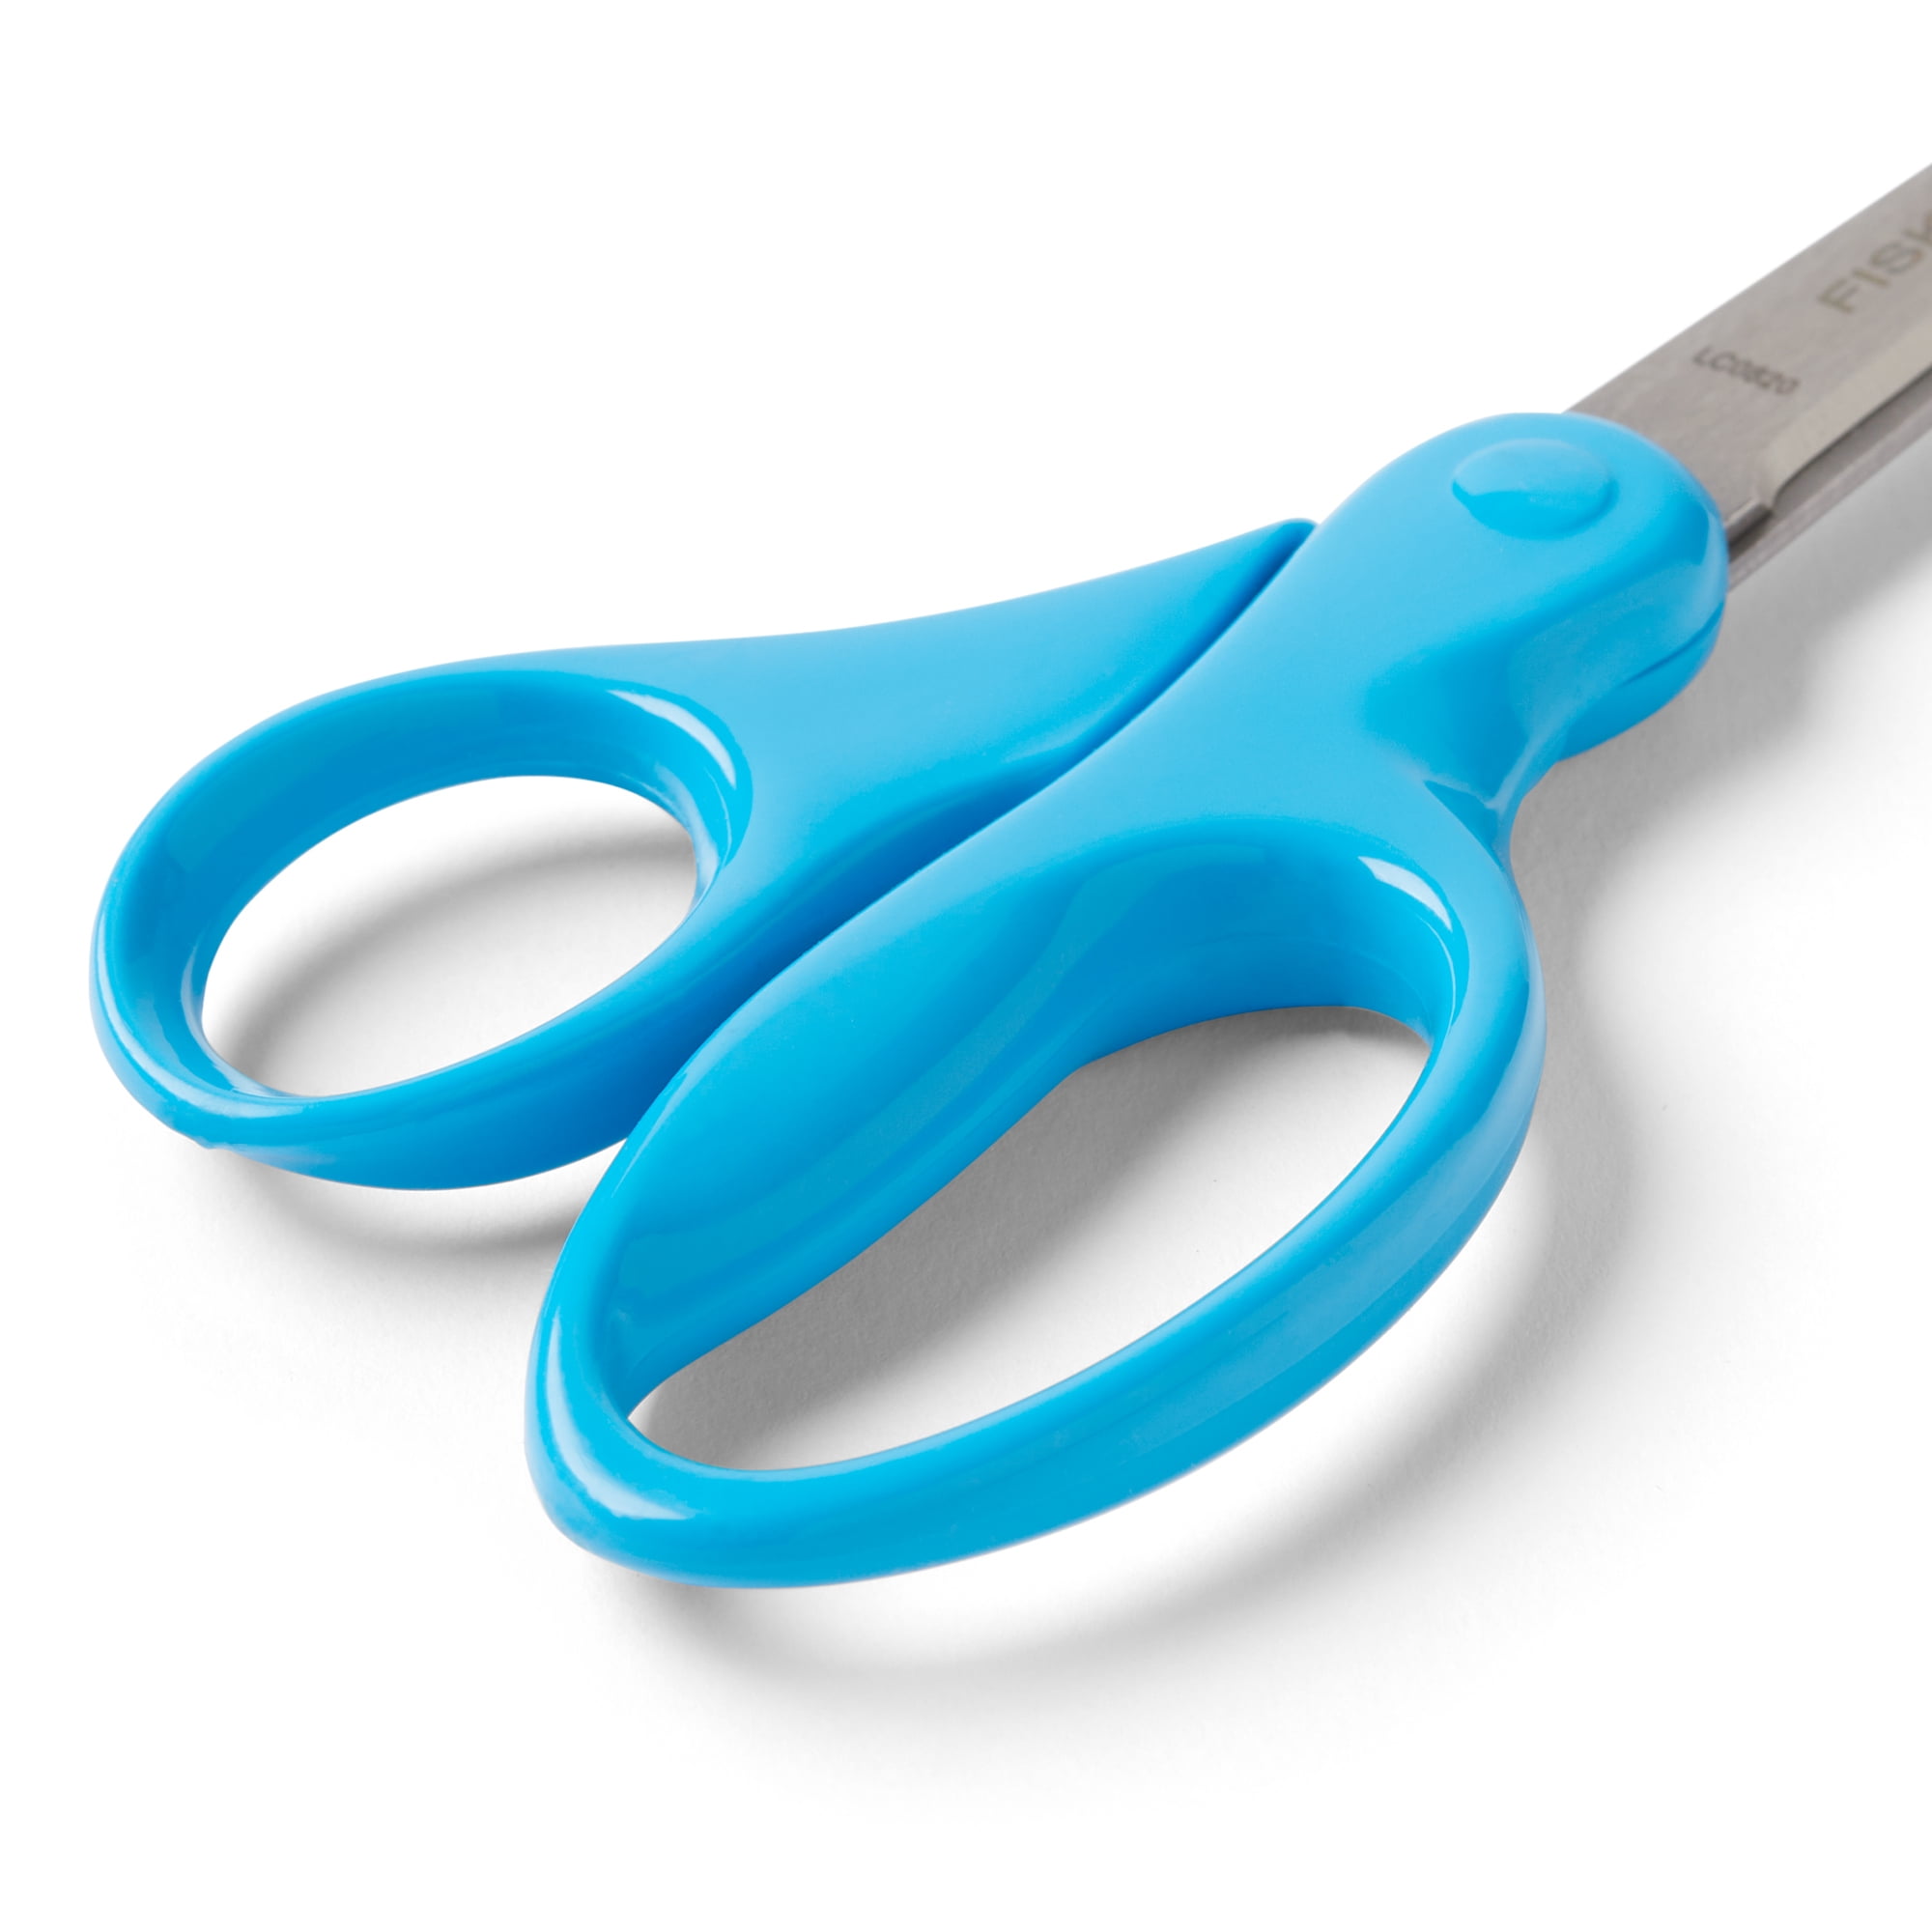 Buy Fiskars® 7 Student Scissors at S&S Worldwide